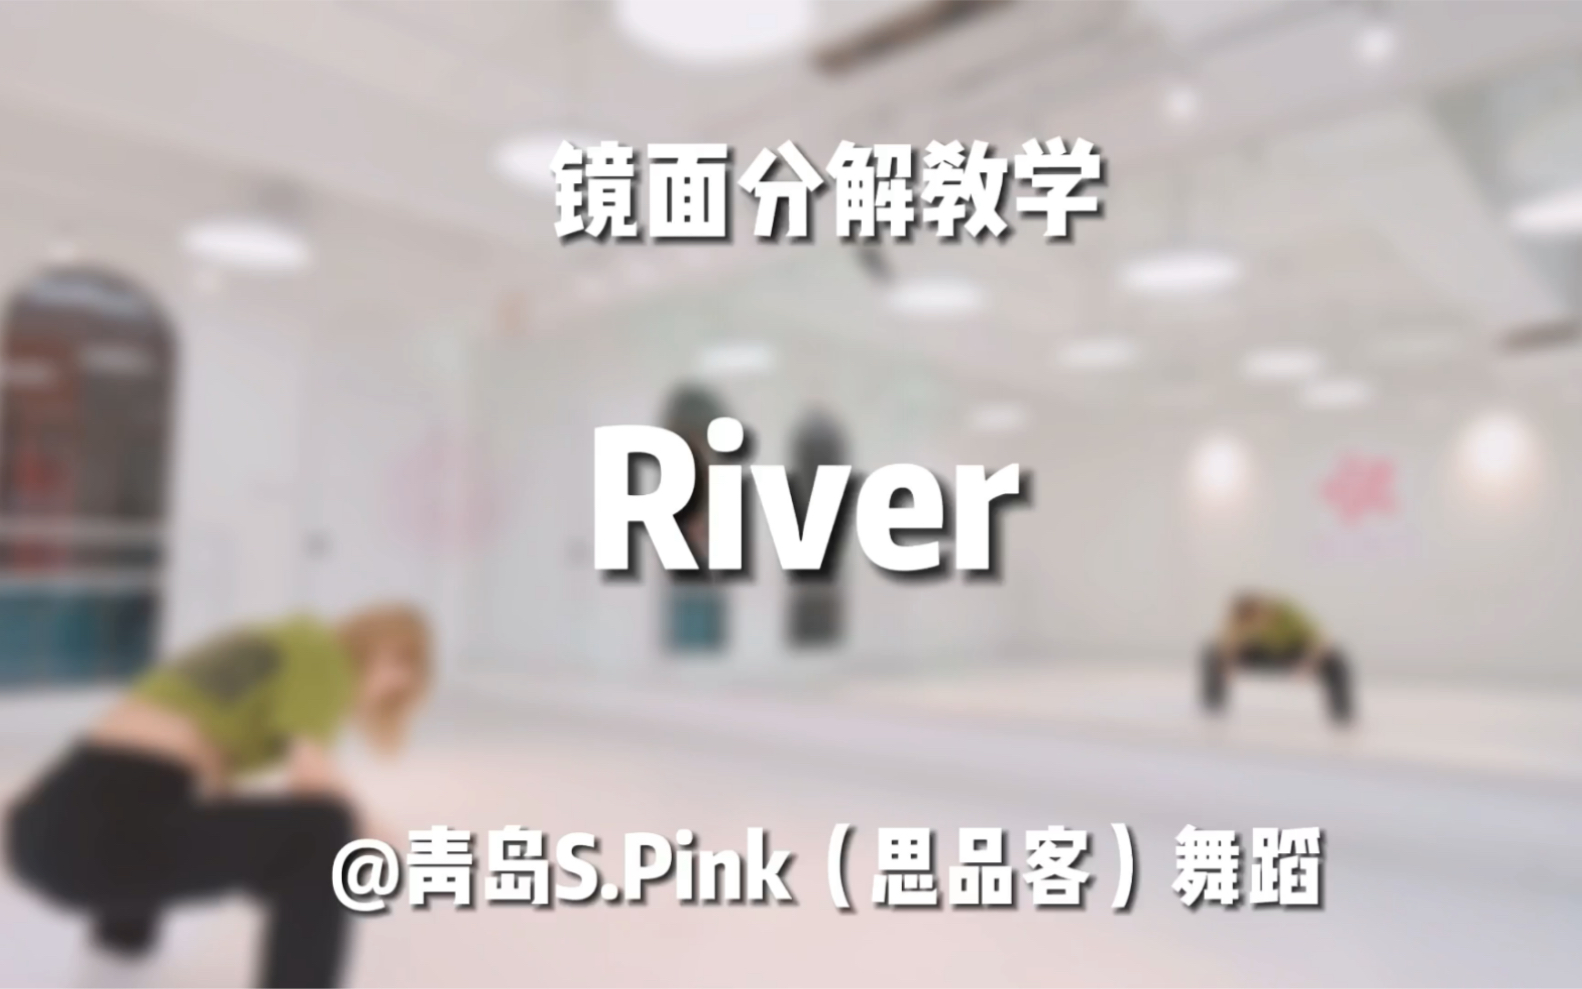 【青岛S.pink舞蹈】爵士舞《River》完整镜面教学